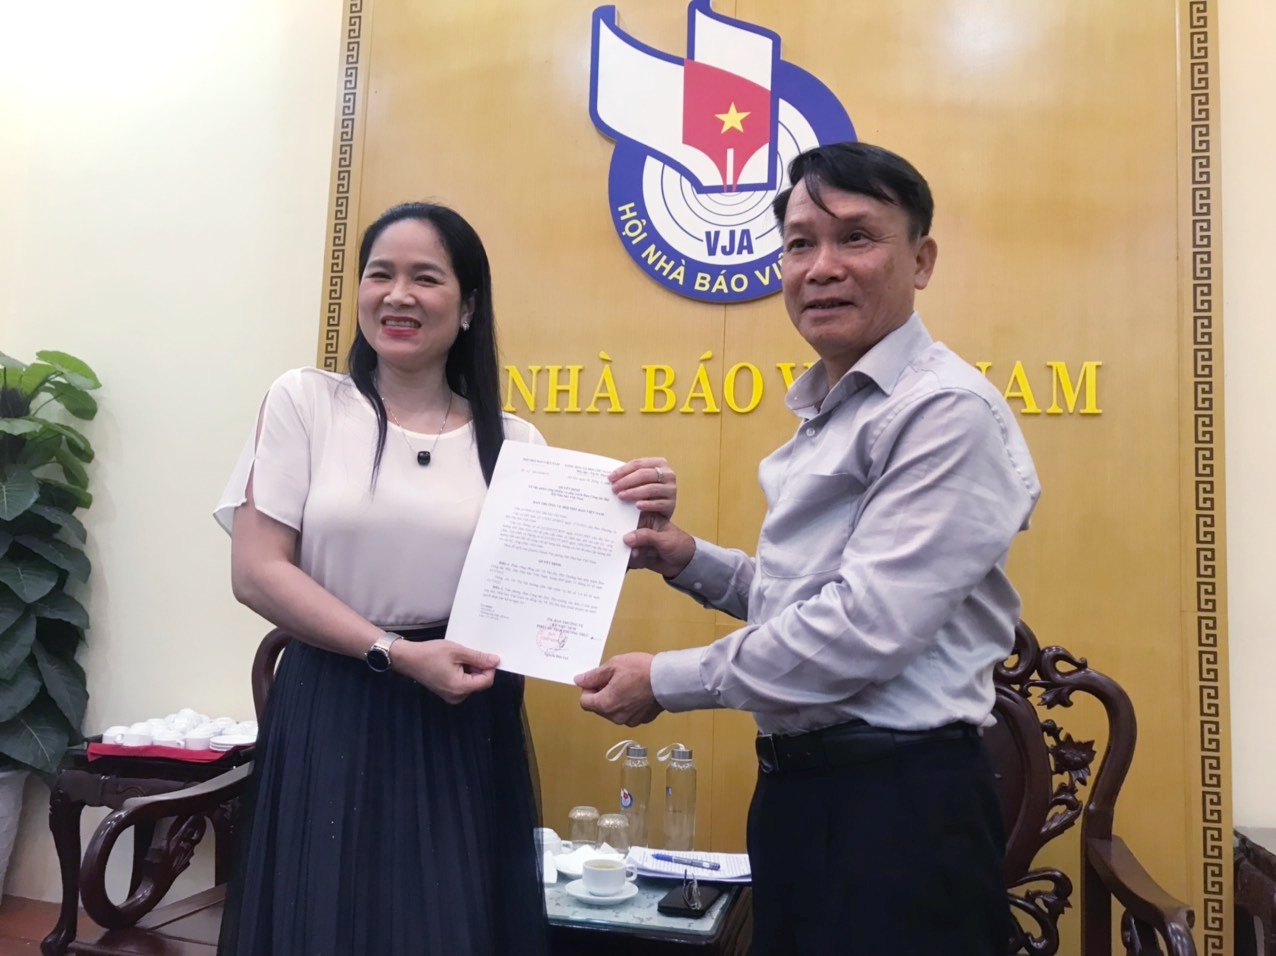 Đồng chí Vũ Thị Hà được phân công làm Phó Trưởng ban phụ trách Ban Công tác hội, Hội Nhà báo Việt Nam kể từ ngày 1/7/2022.